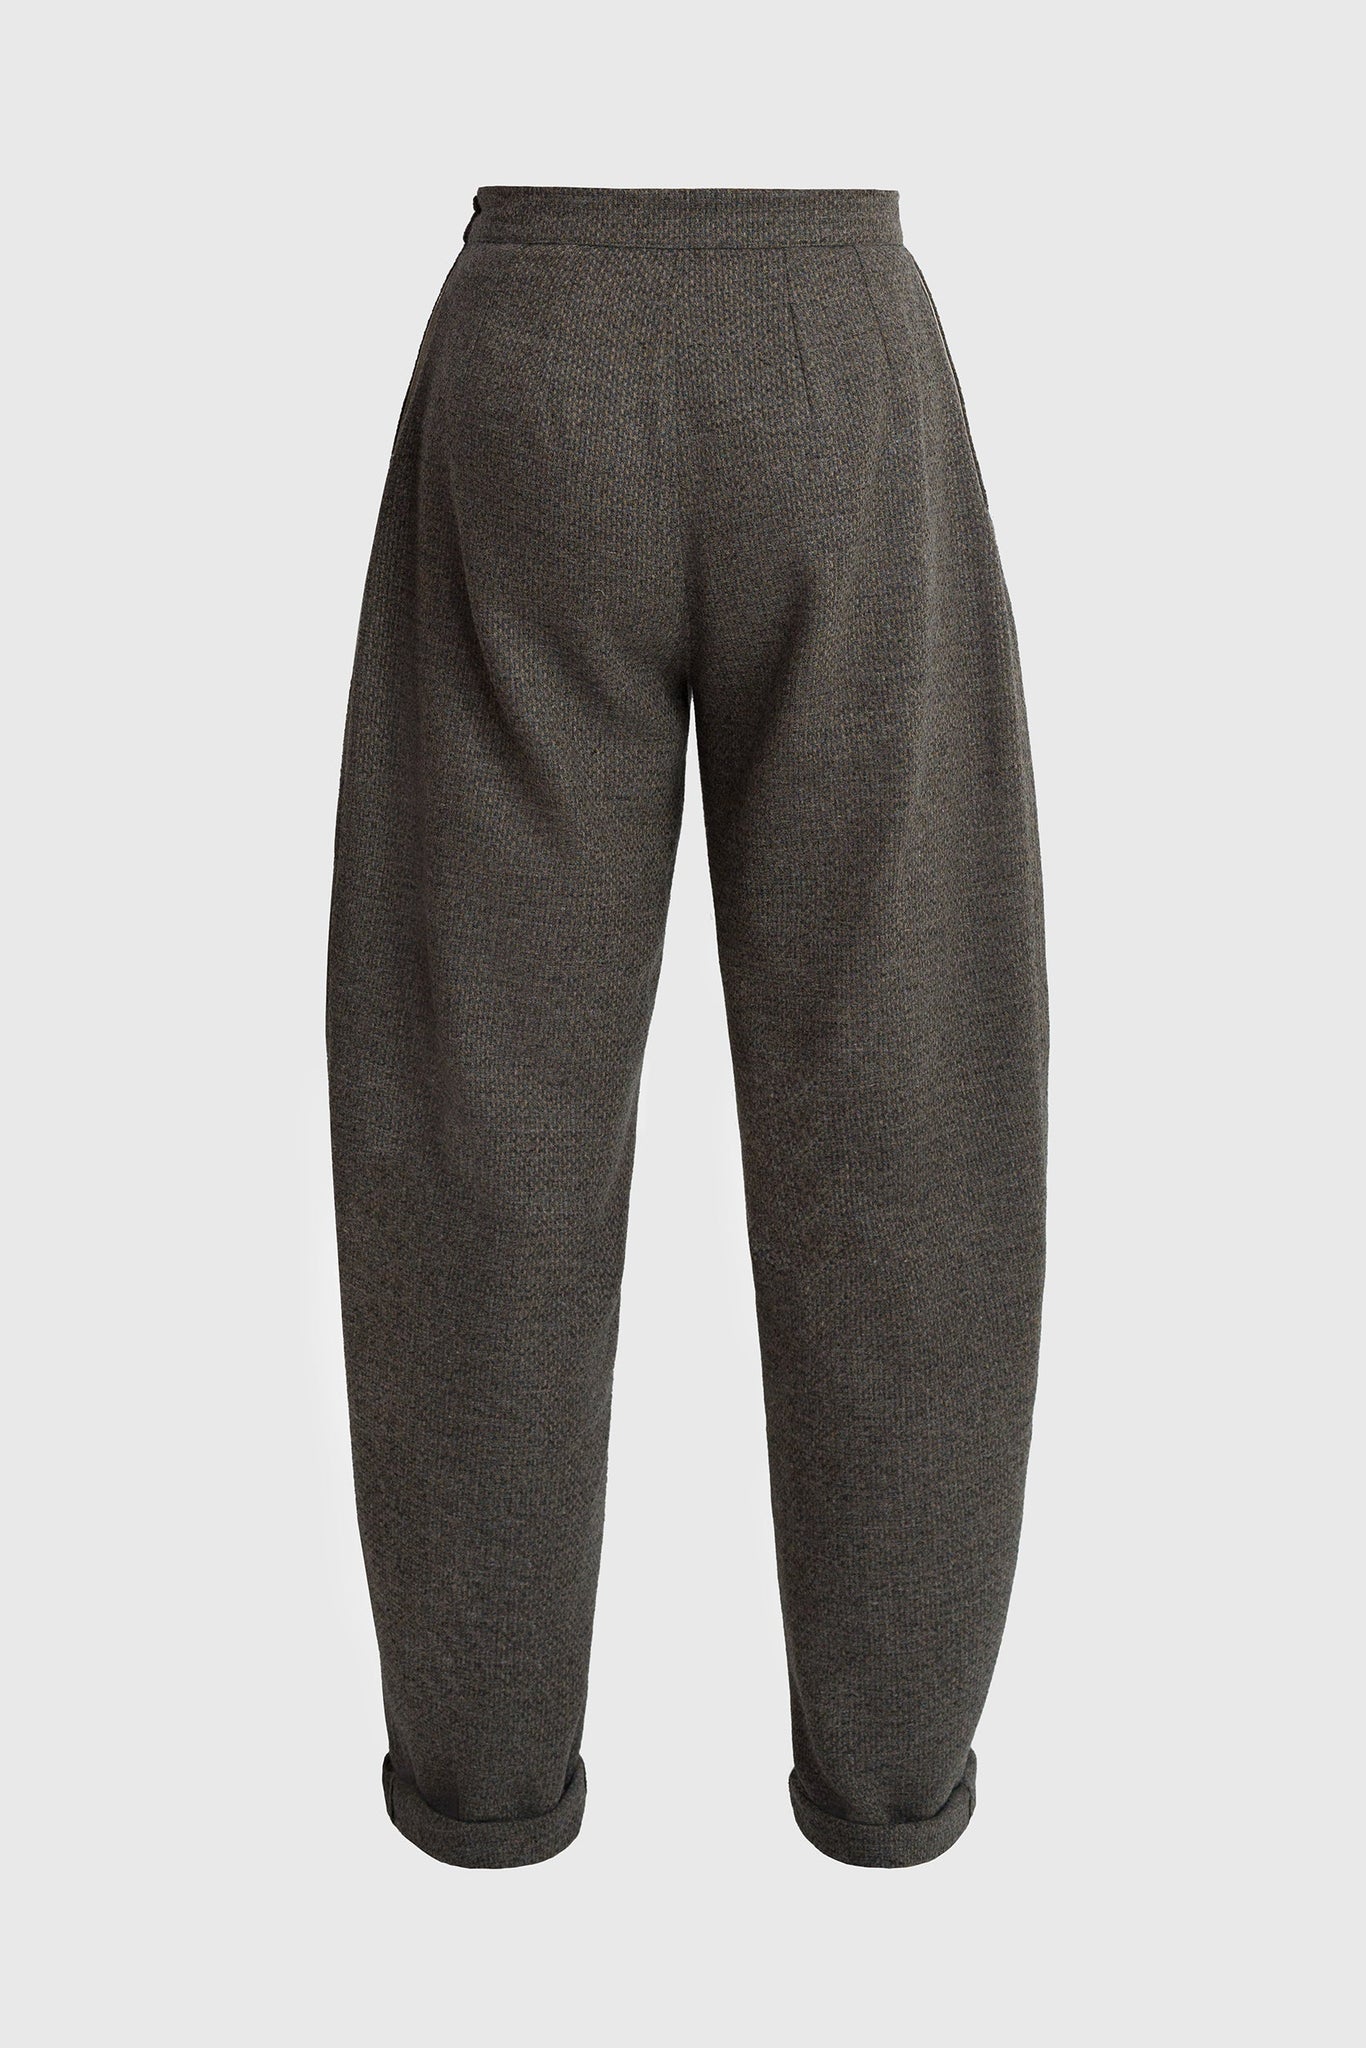 Curved Wool Pants - Men's